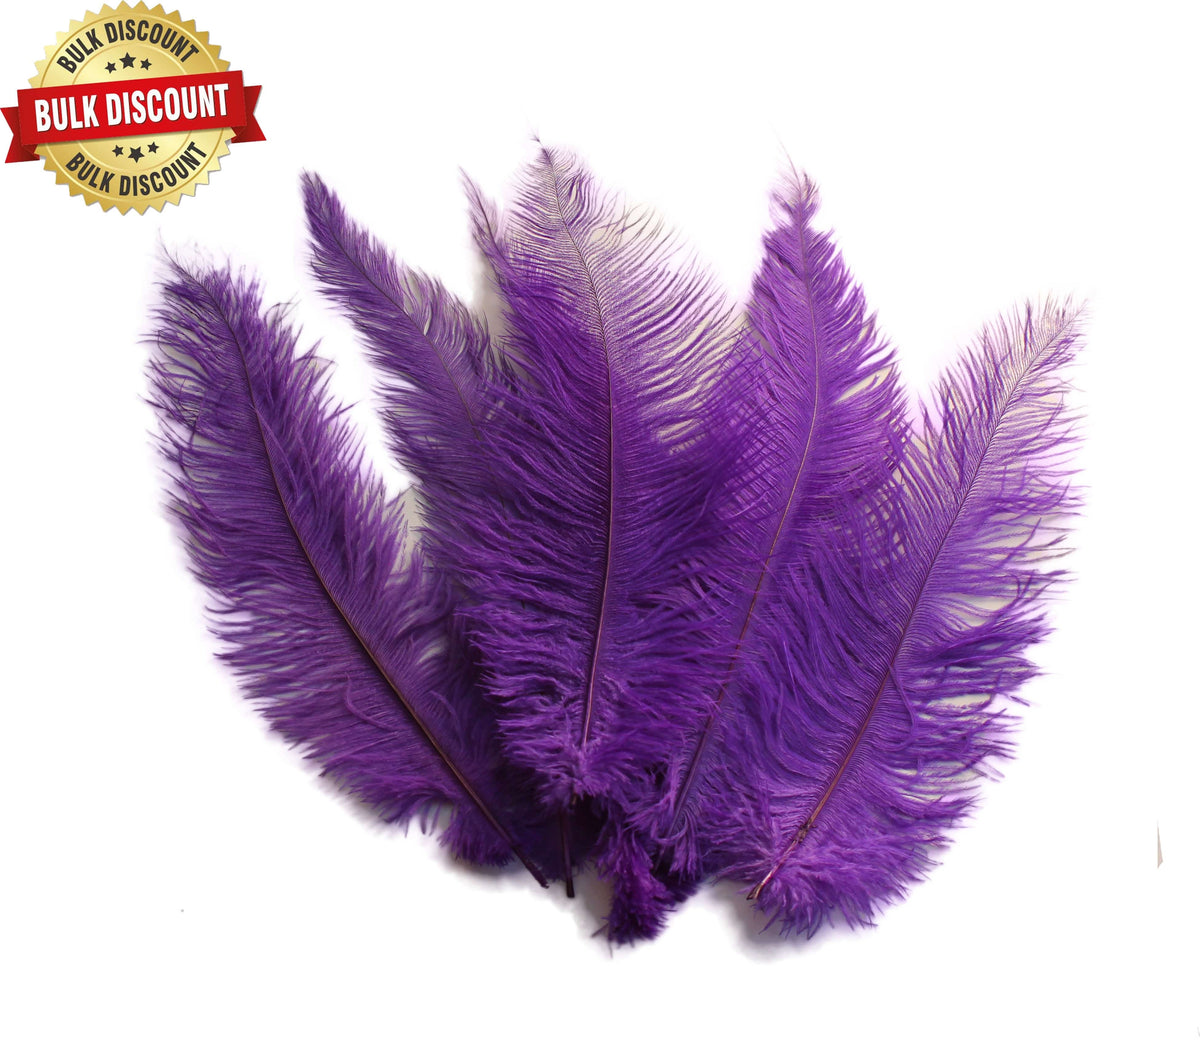 BULK 1/4lb Ostrich Feather Spad Plumes 12-16 (Purple) for Sale Online